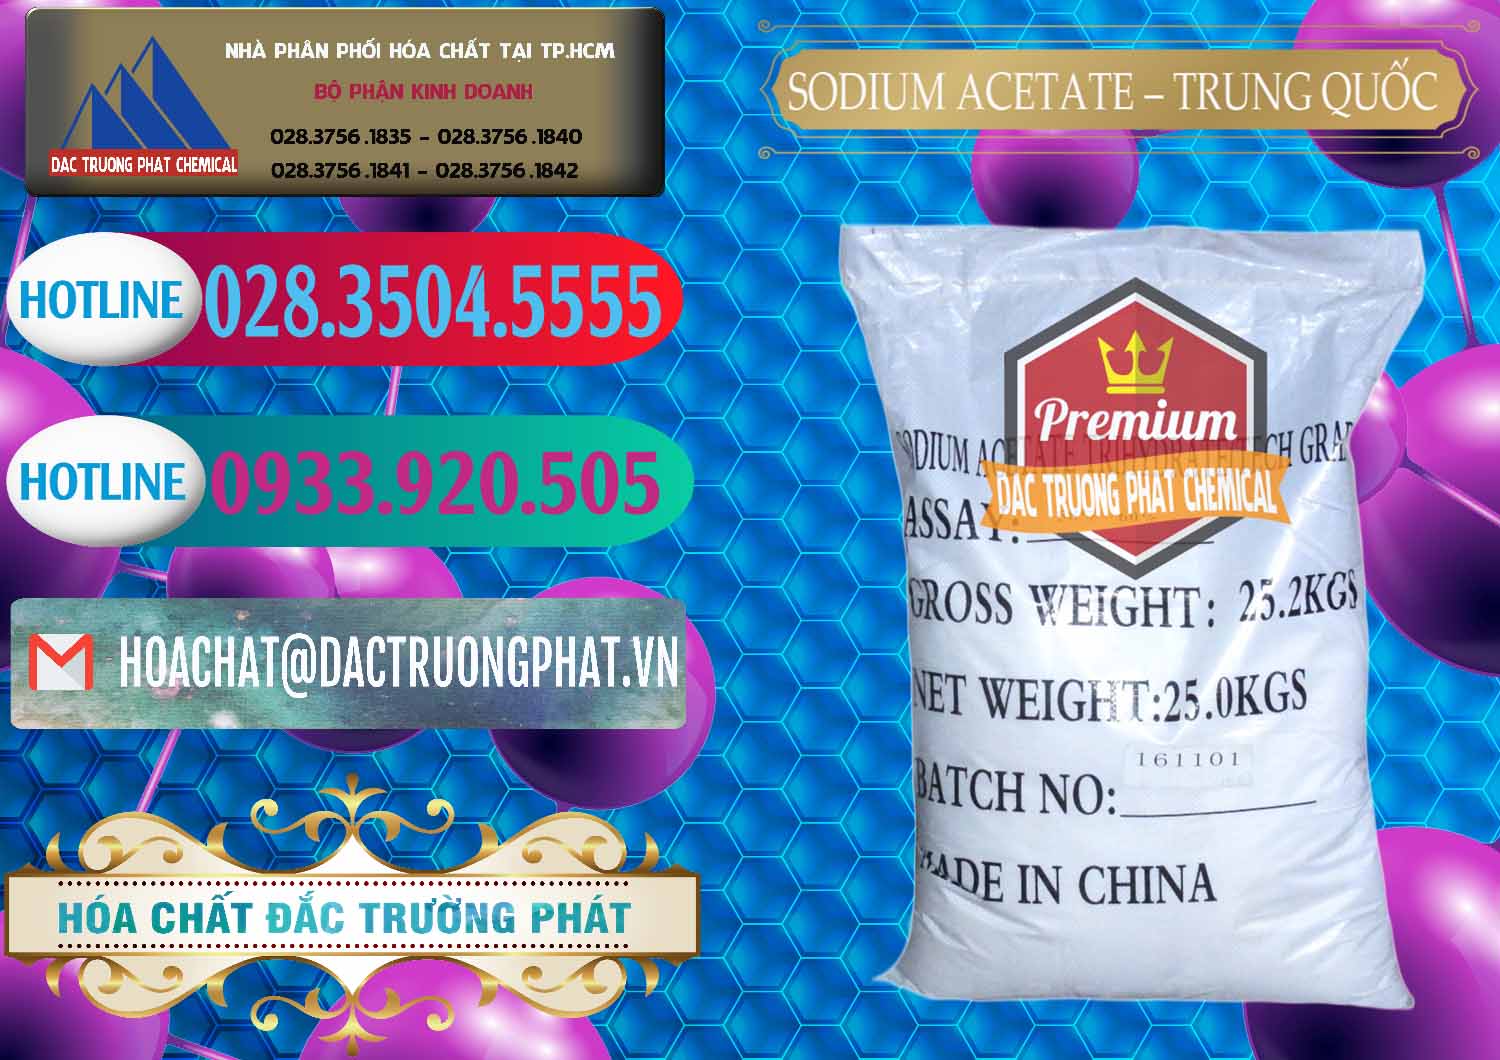 Đơn vị chuyên phân phối và bán Sodium Acetate - Natri Acetate Trung Quốc China - 0134 - Nơi phân phối ( kinh doanh ) hóa chất tại TP.HCM - truongphat.vn